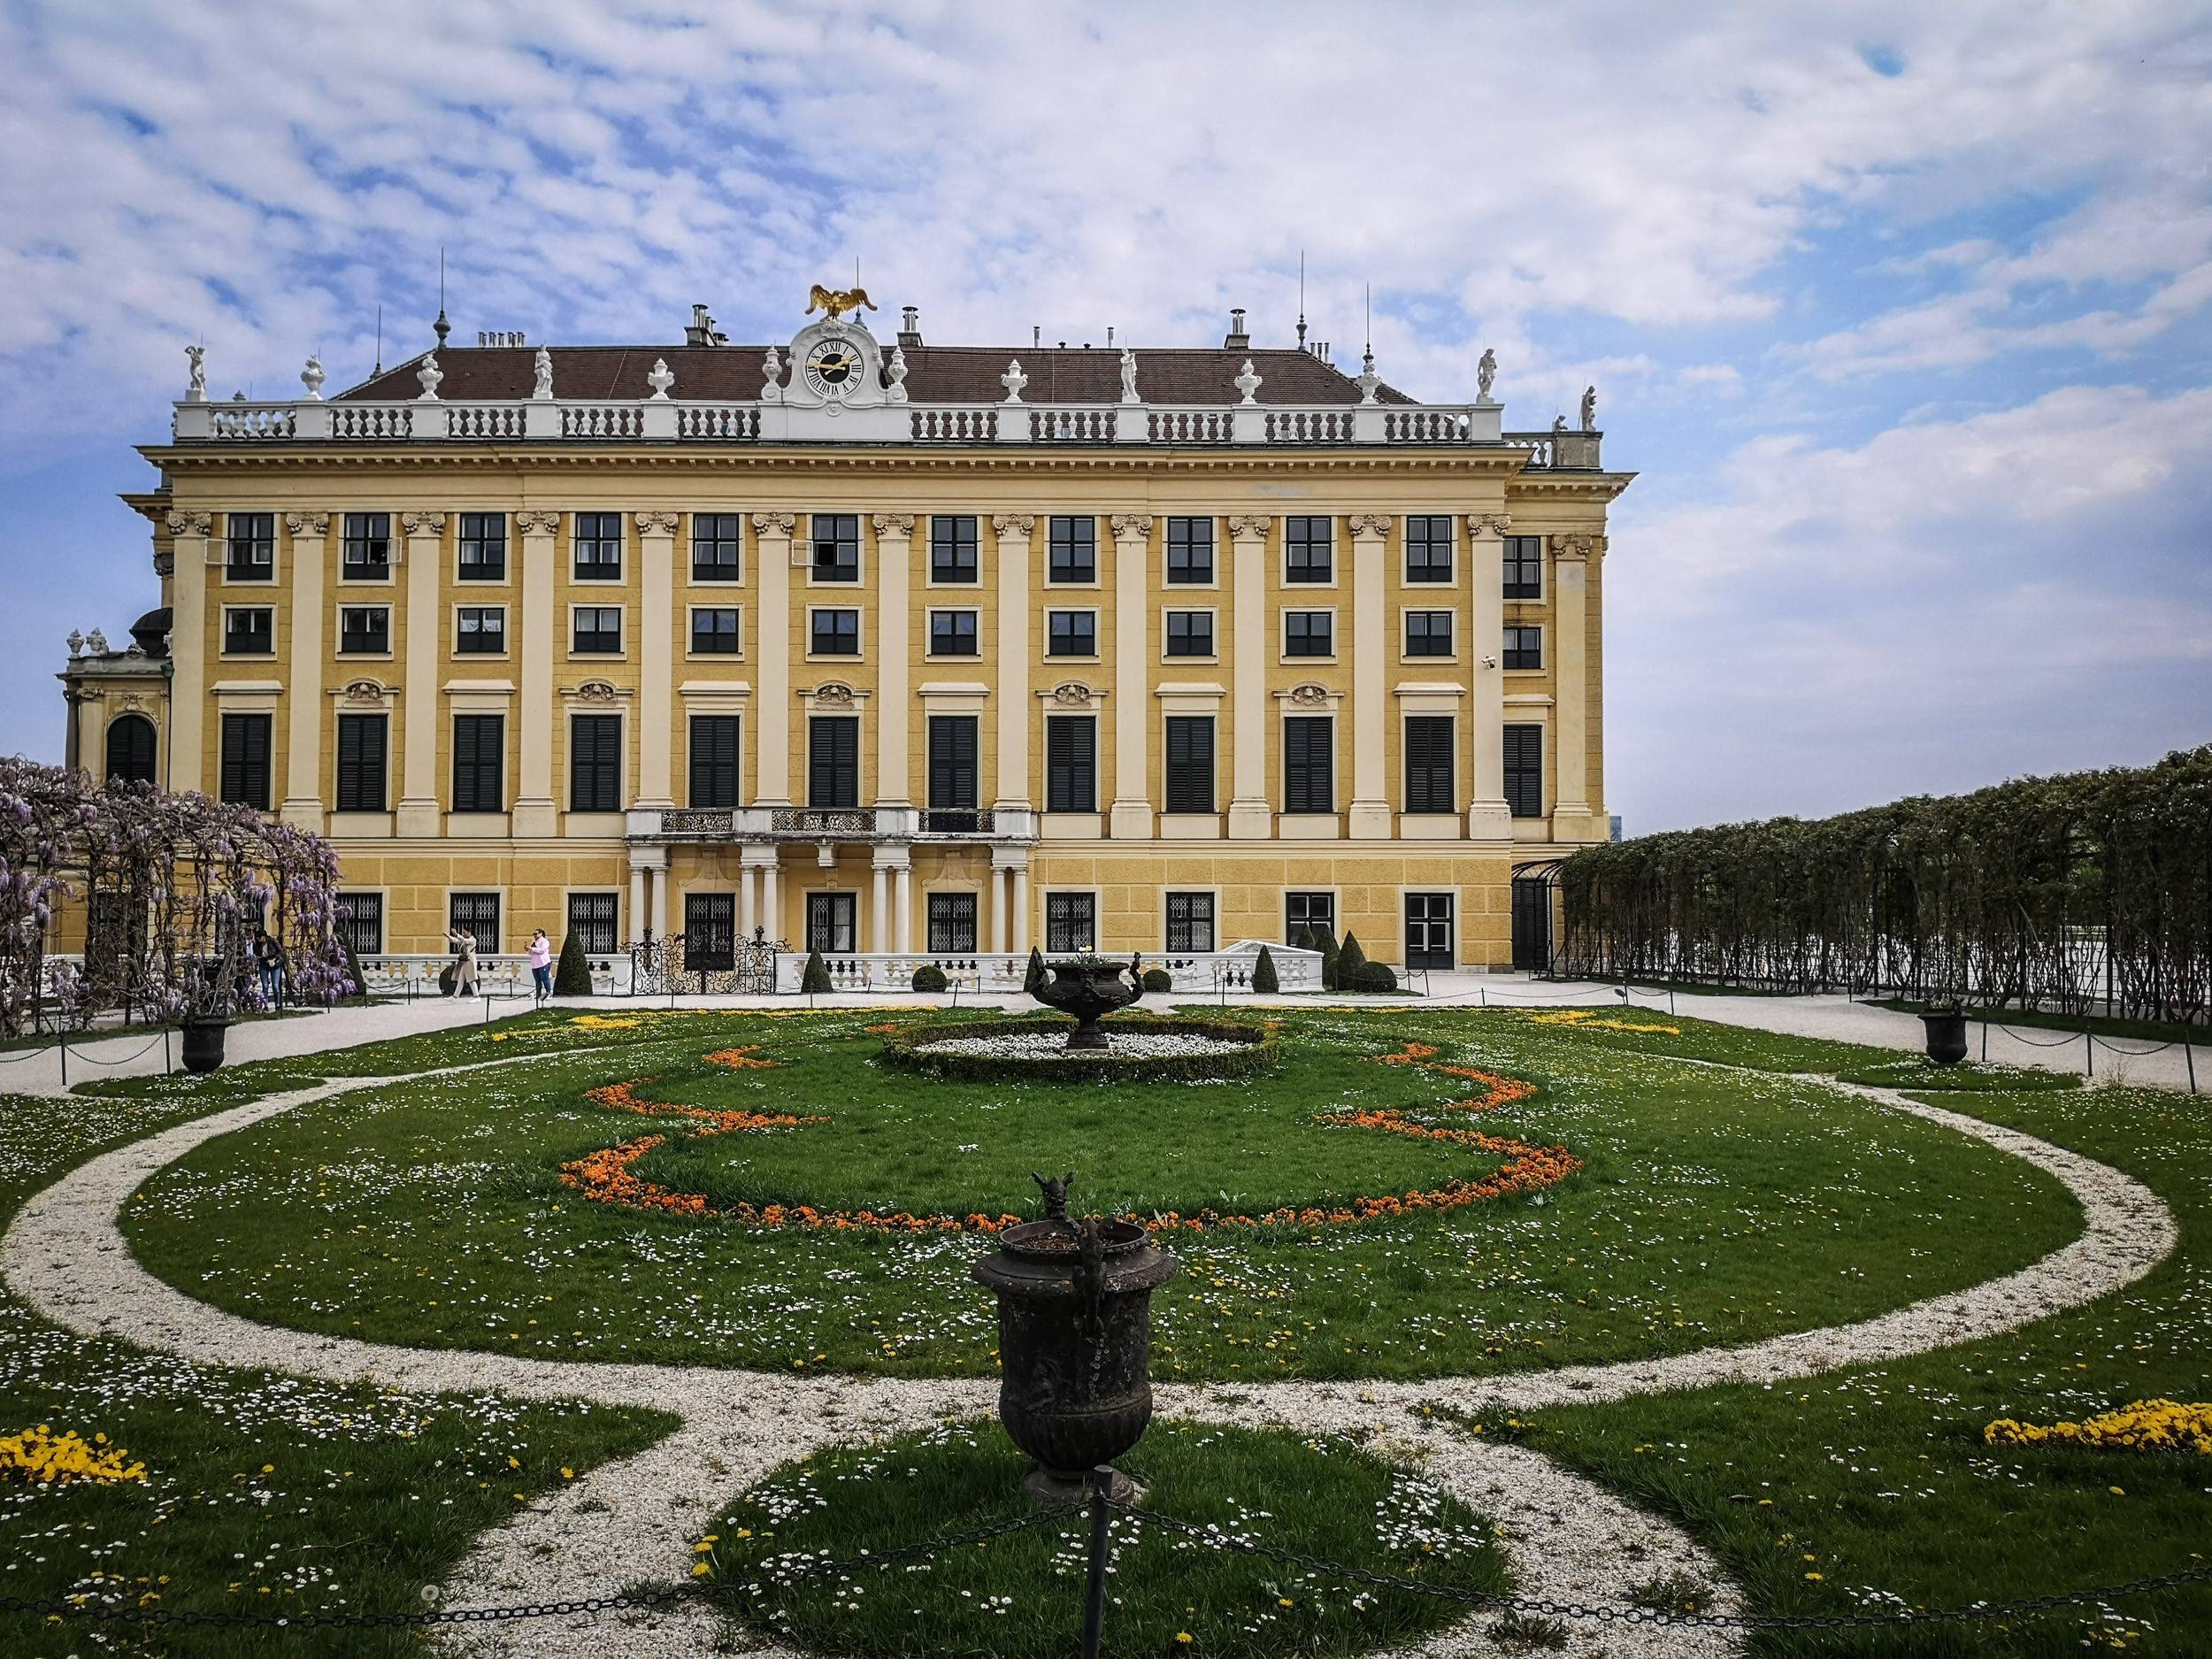 The gardens next to Schönbrunn Palace, Vienna